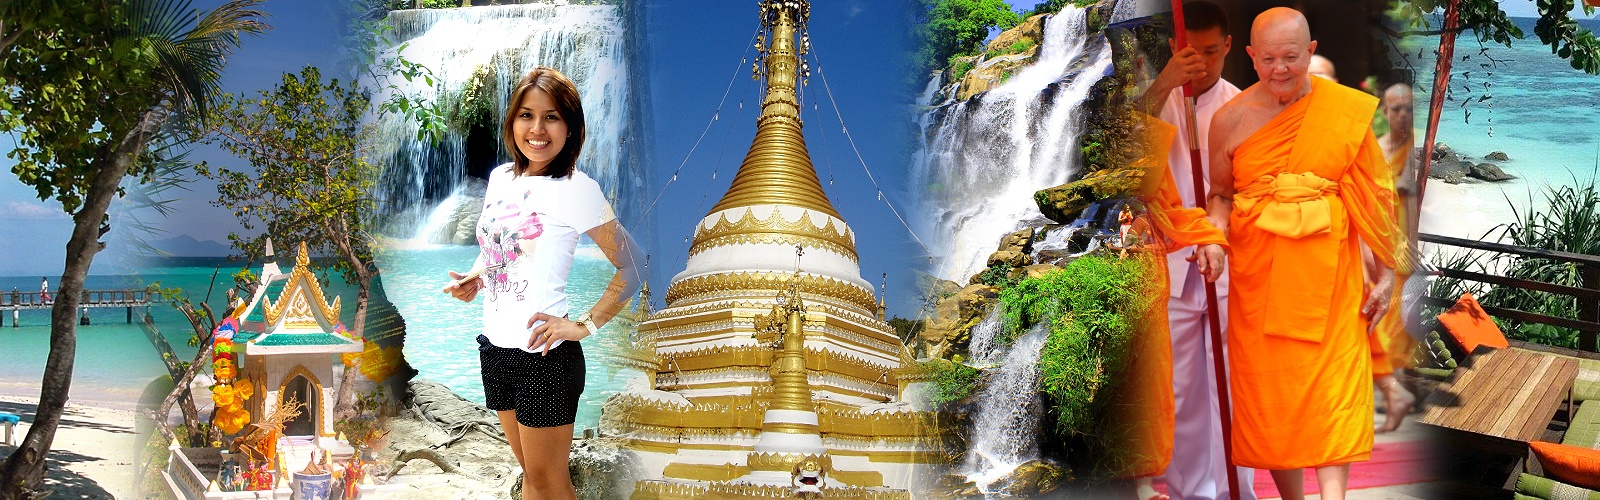  - Umgebung von Chiang Mai Thailand